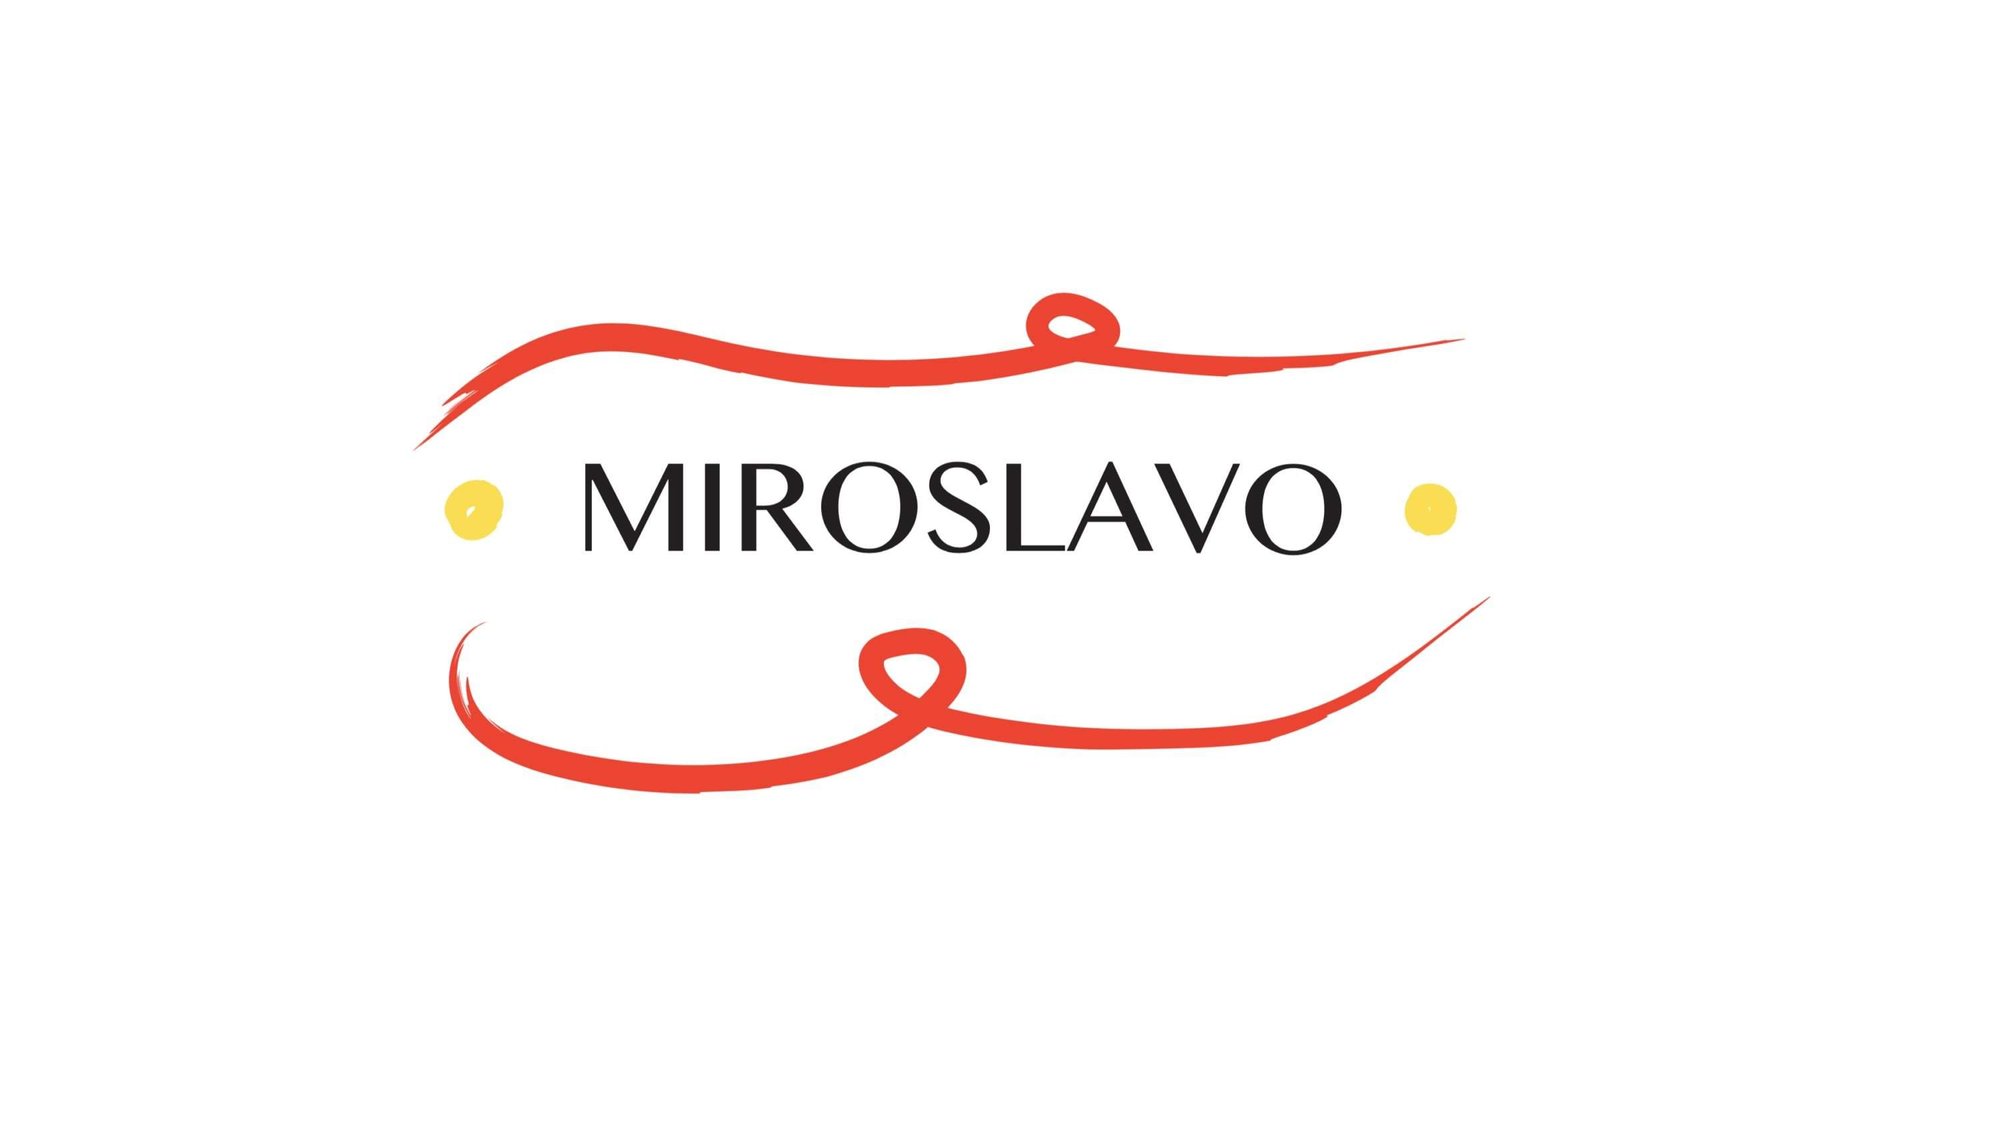 miroslavo tiene una oficiana en espana